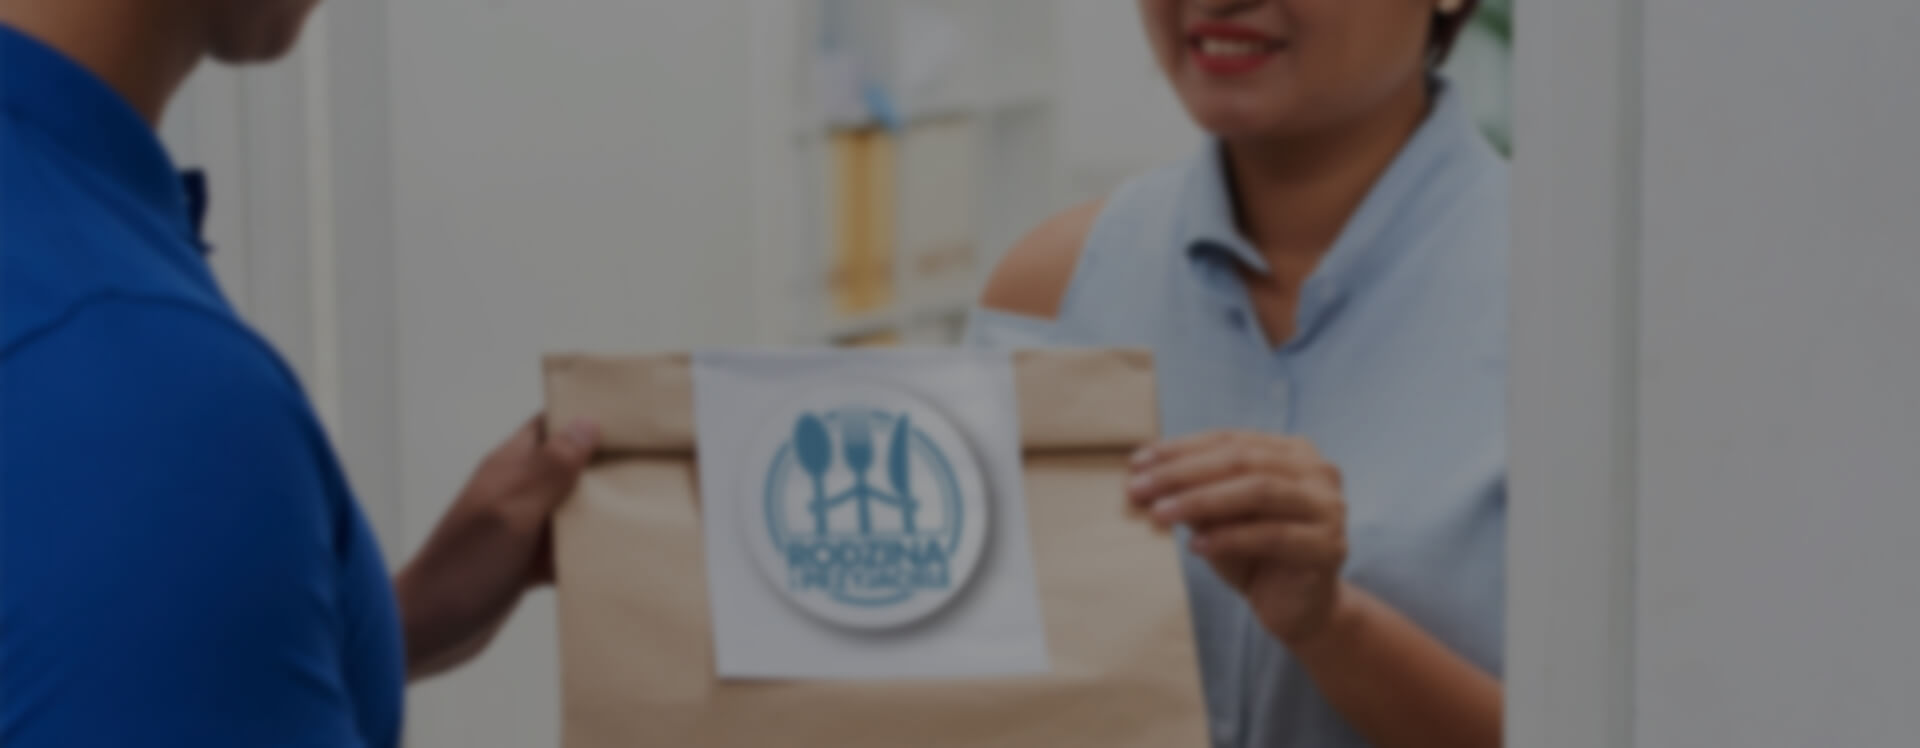 Kobieta wręczająca torbę z jedzeniem na dowóz kobiecie w jasno niebieskiej koszuli.